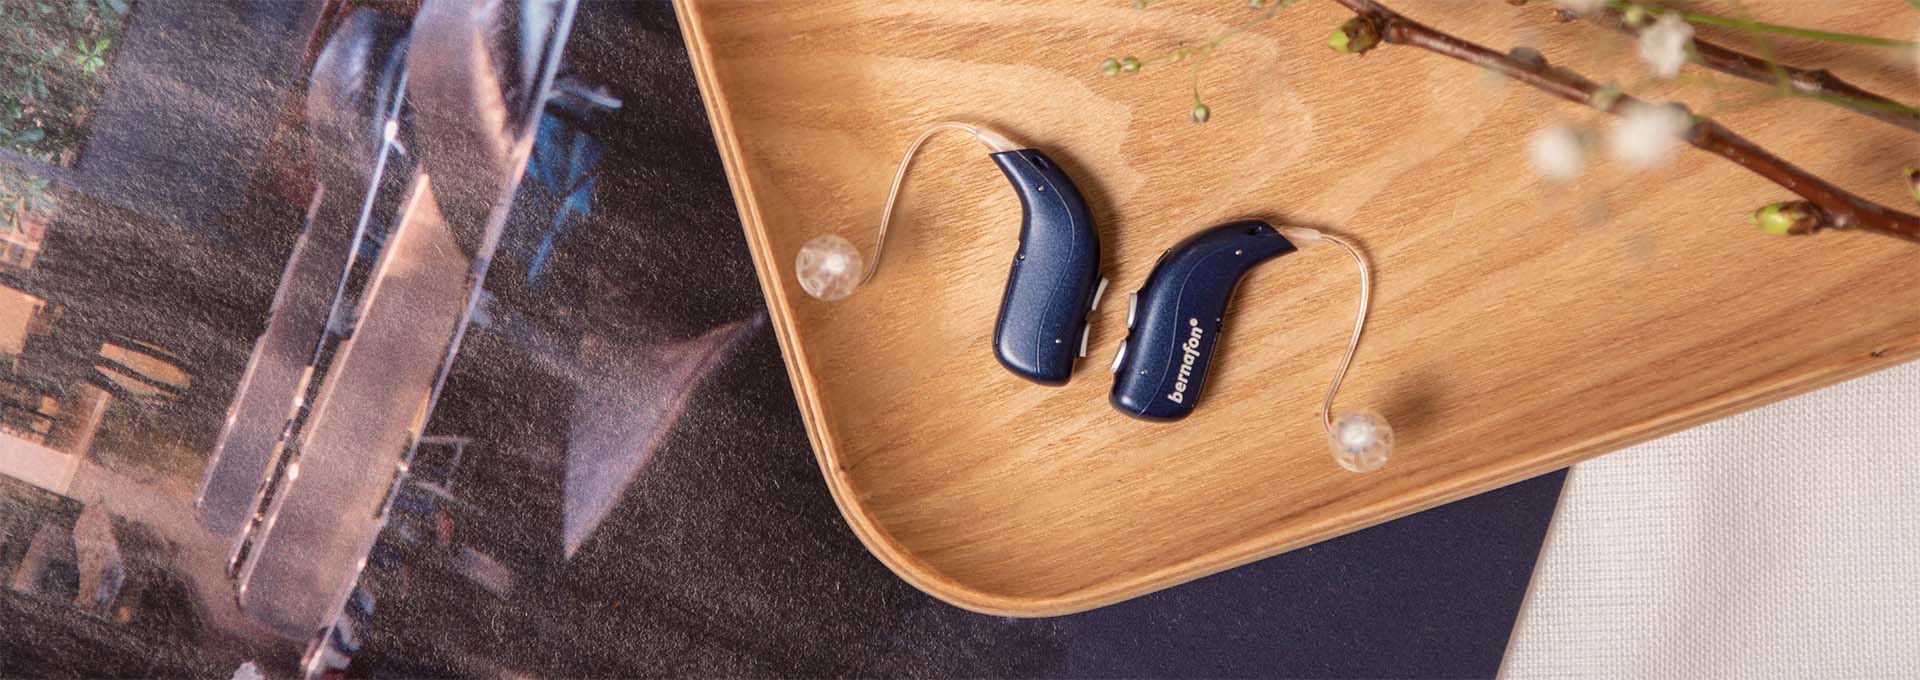 Paire d'appareils auditifs rechargeables Bernafon Alpha bleu foncé sur une planche de bois avec un magazine et des fleurs de printemps blanches 